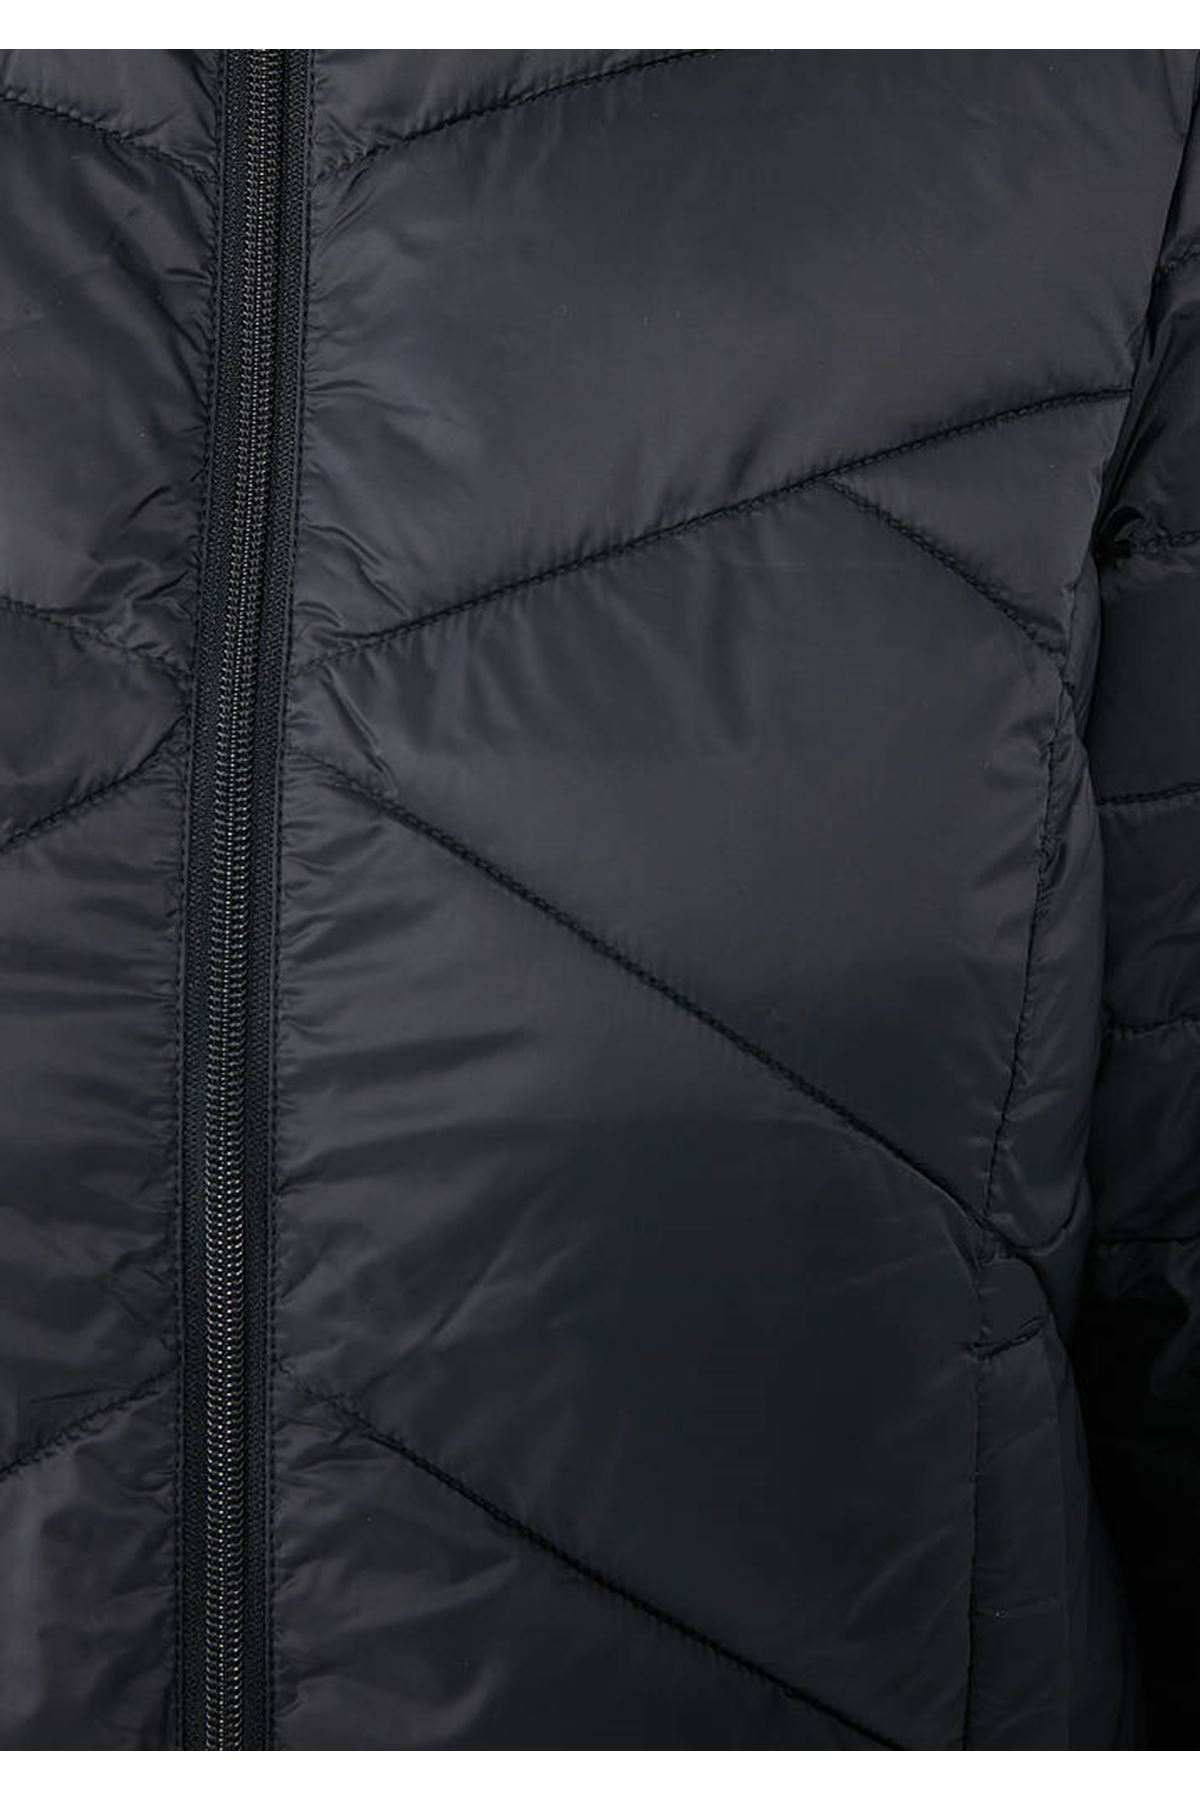 Mavi Kadın Siyah Ceket - M110698-900